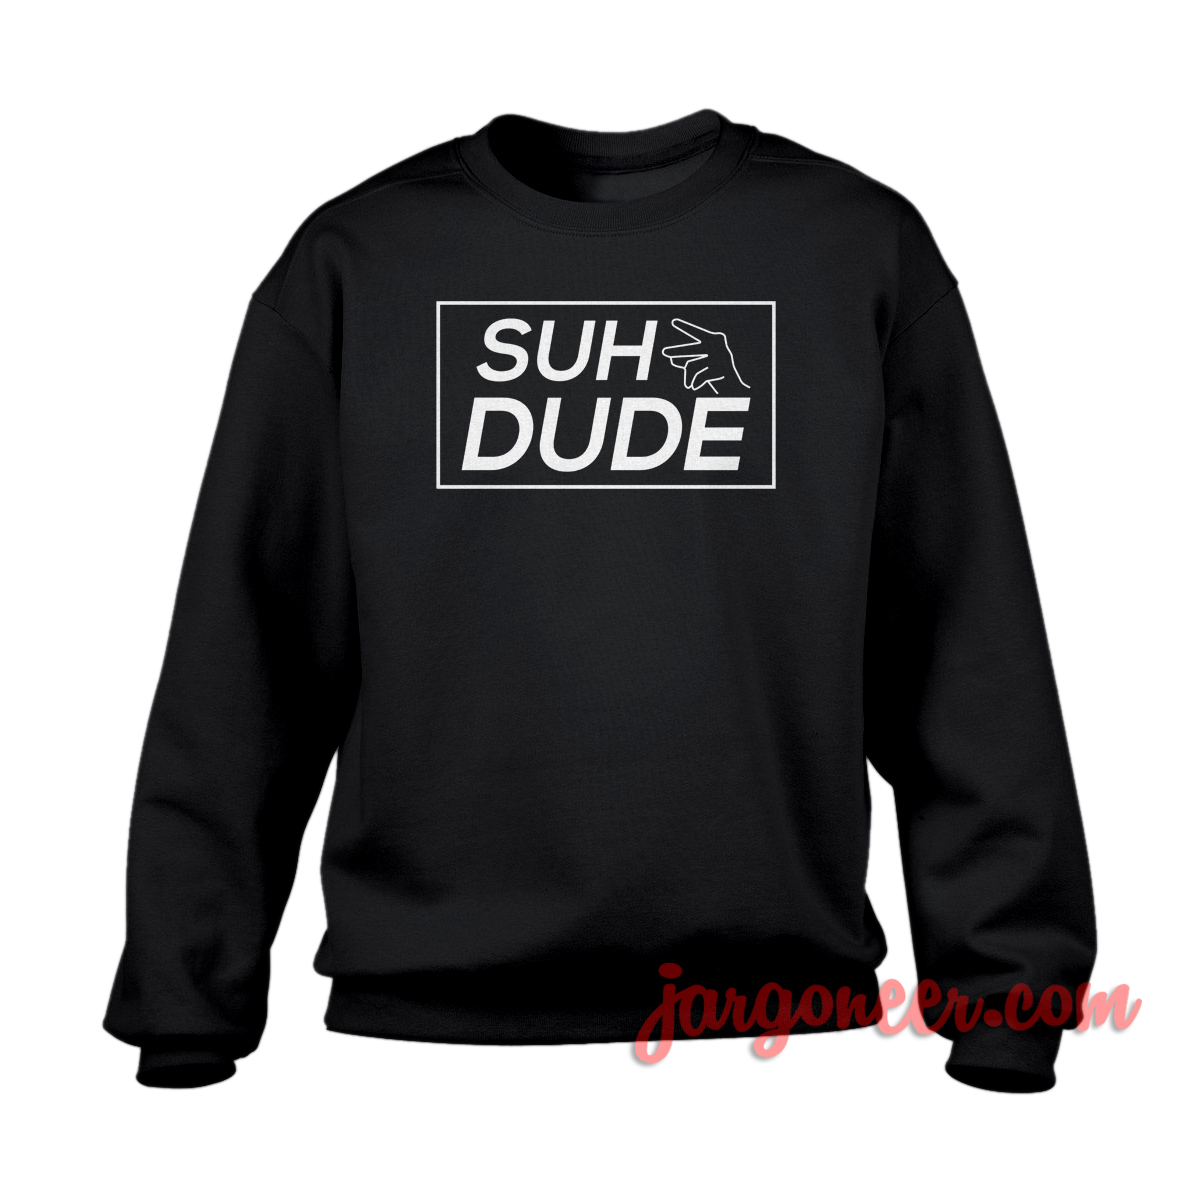 SUH Dude - Shop Unique Graphic Cool Shirt Designs